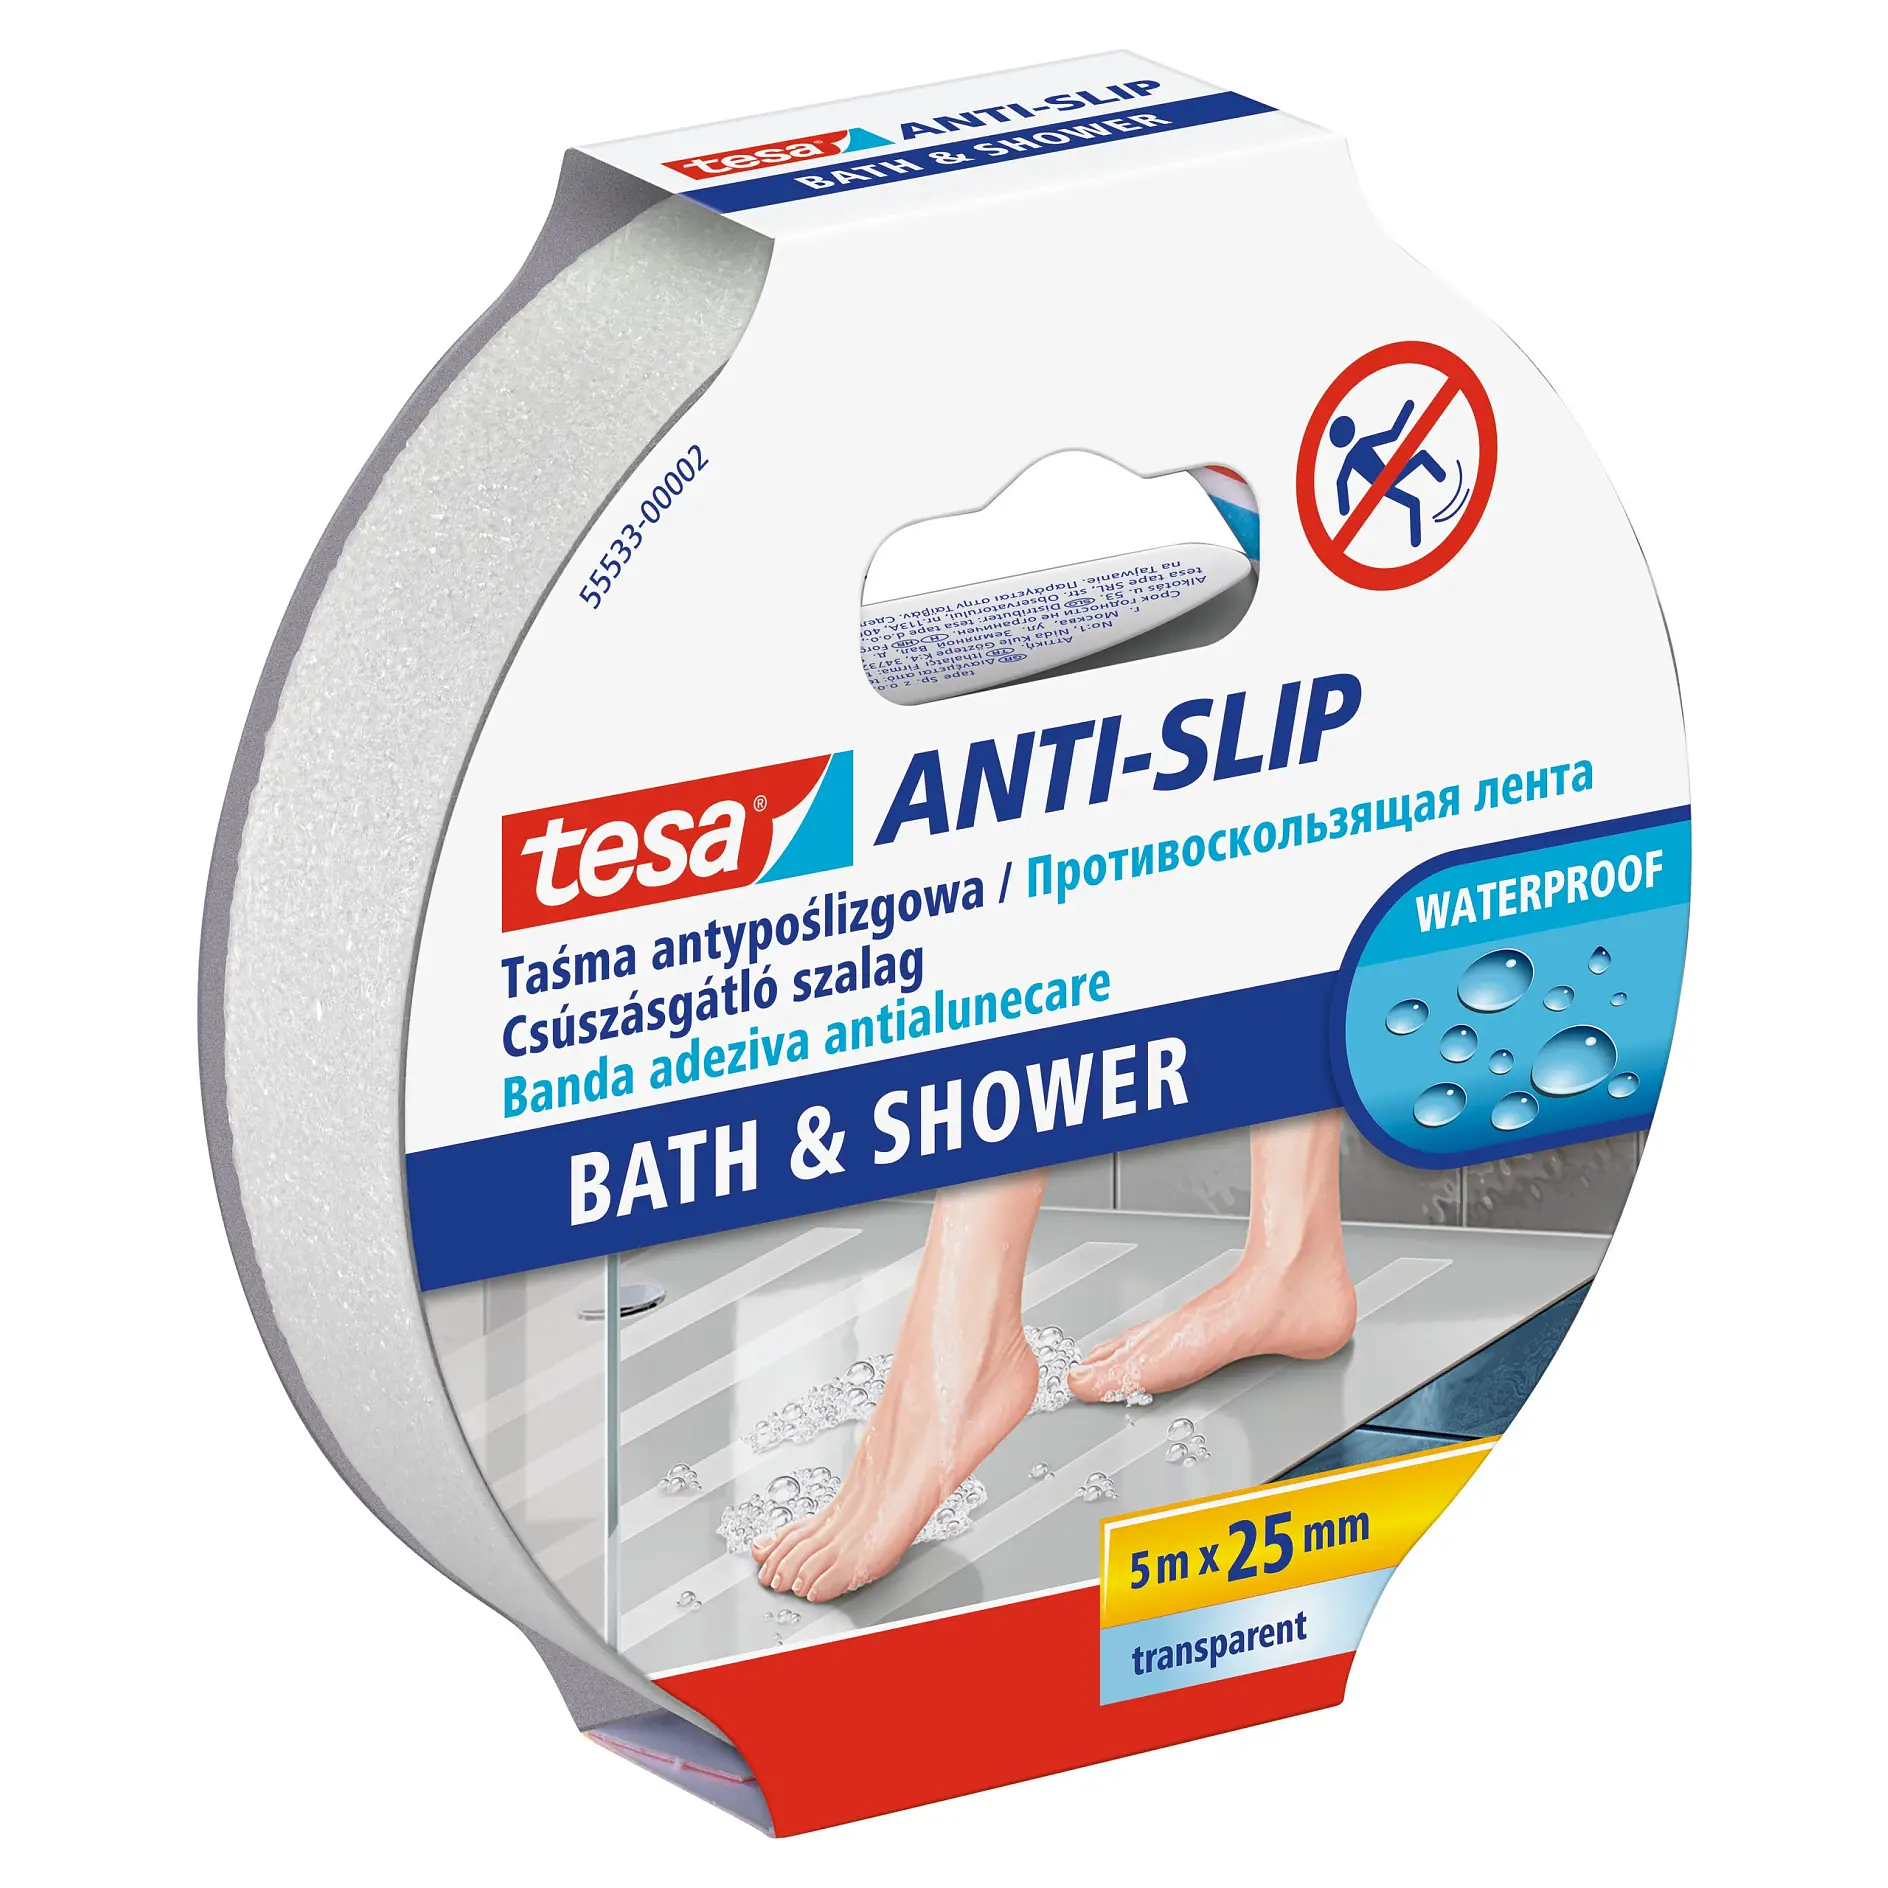 [en-en] tesa Anti-slip tape for bathroom and shower